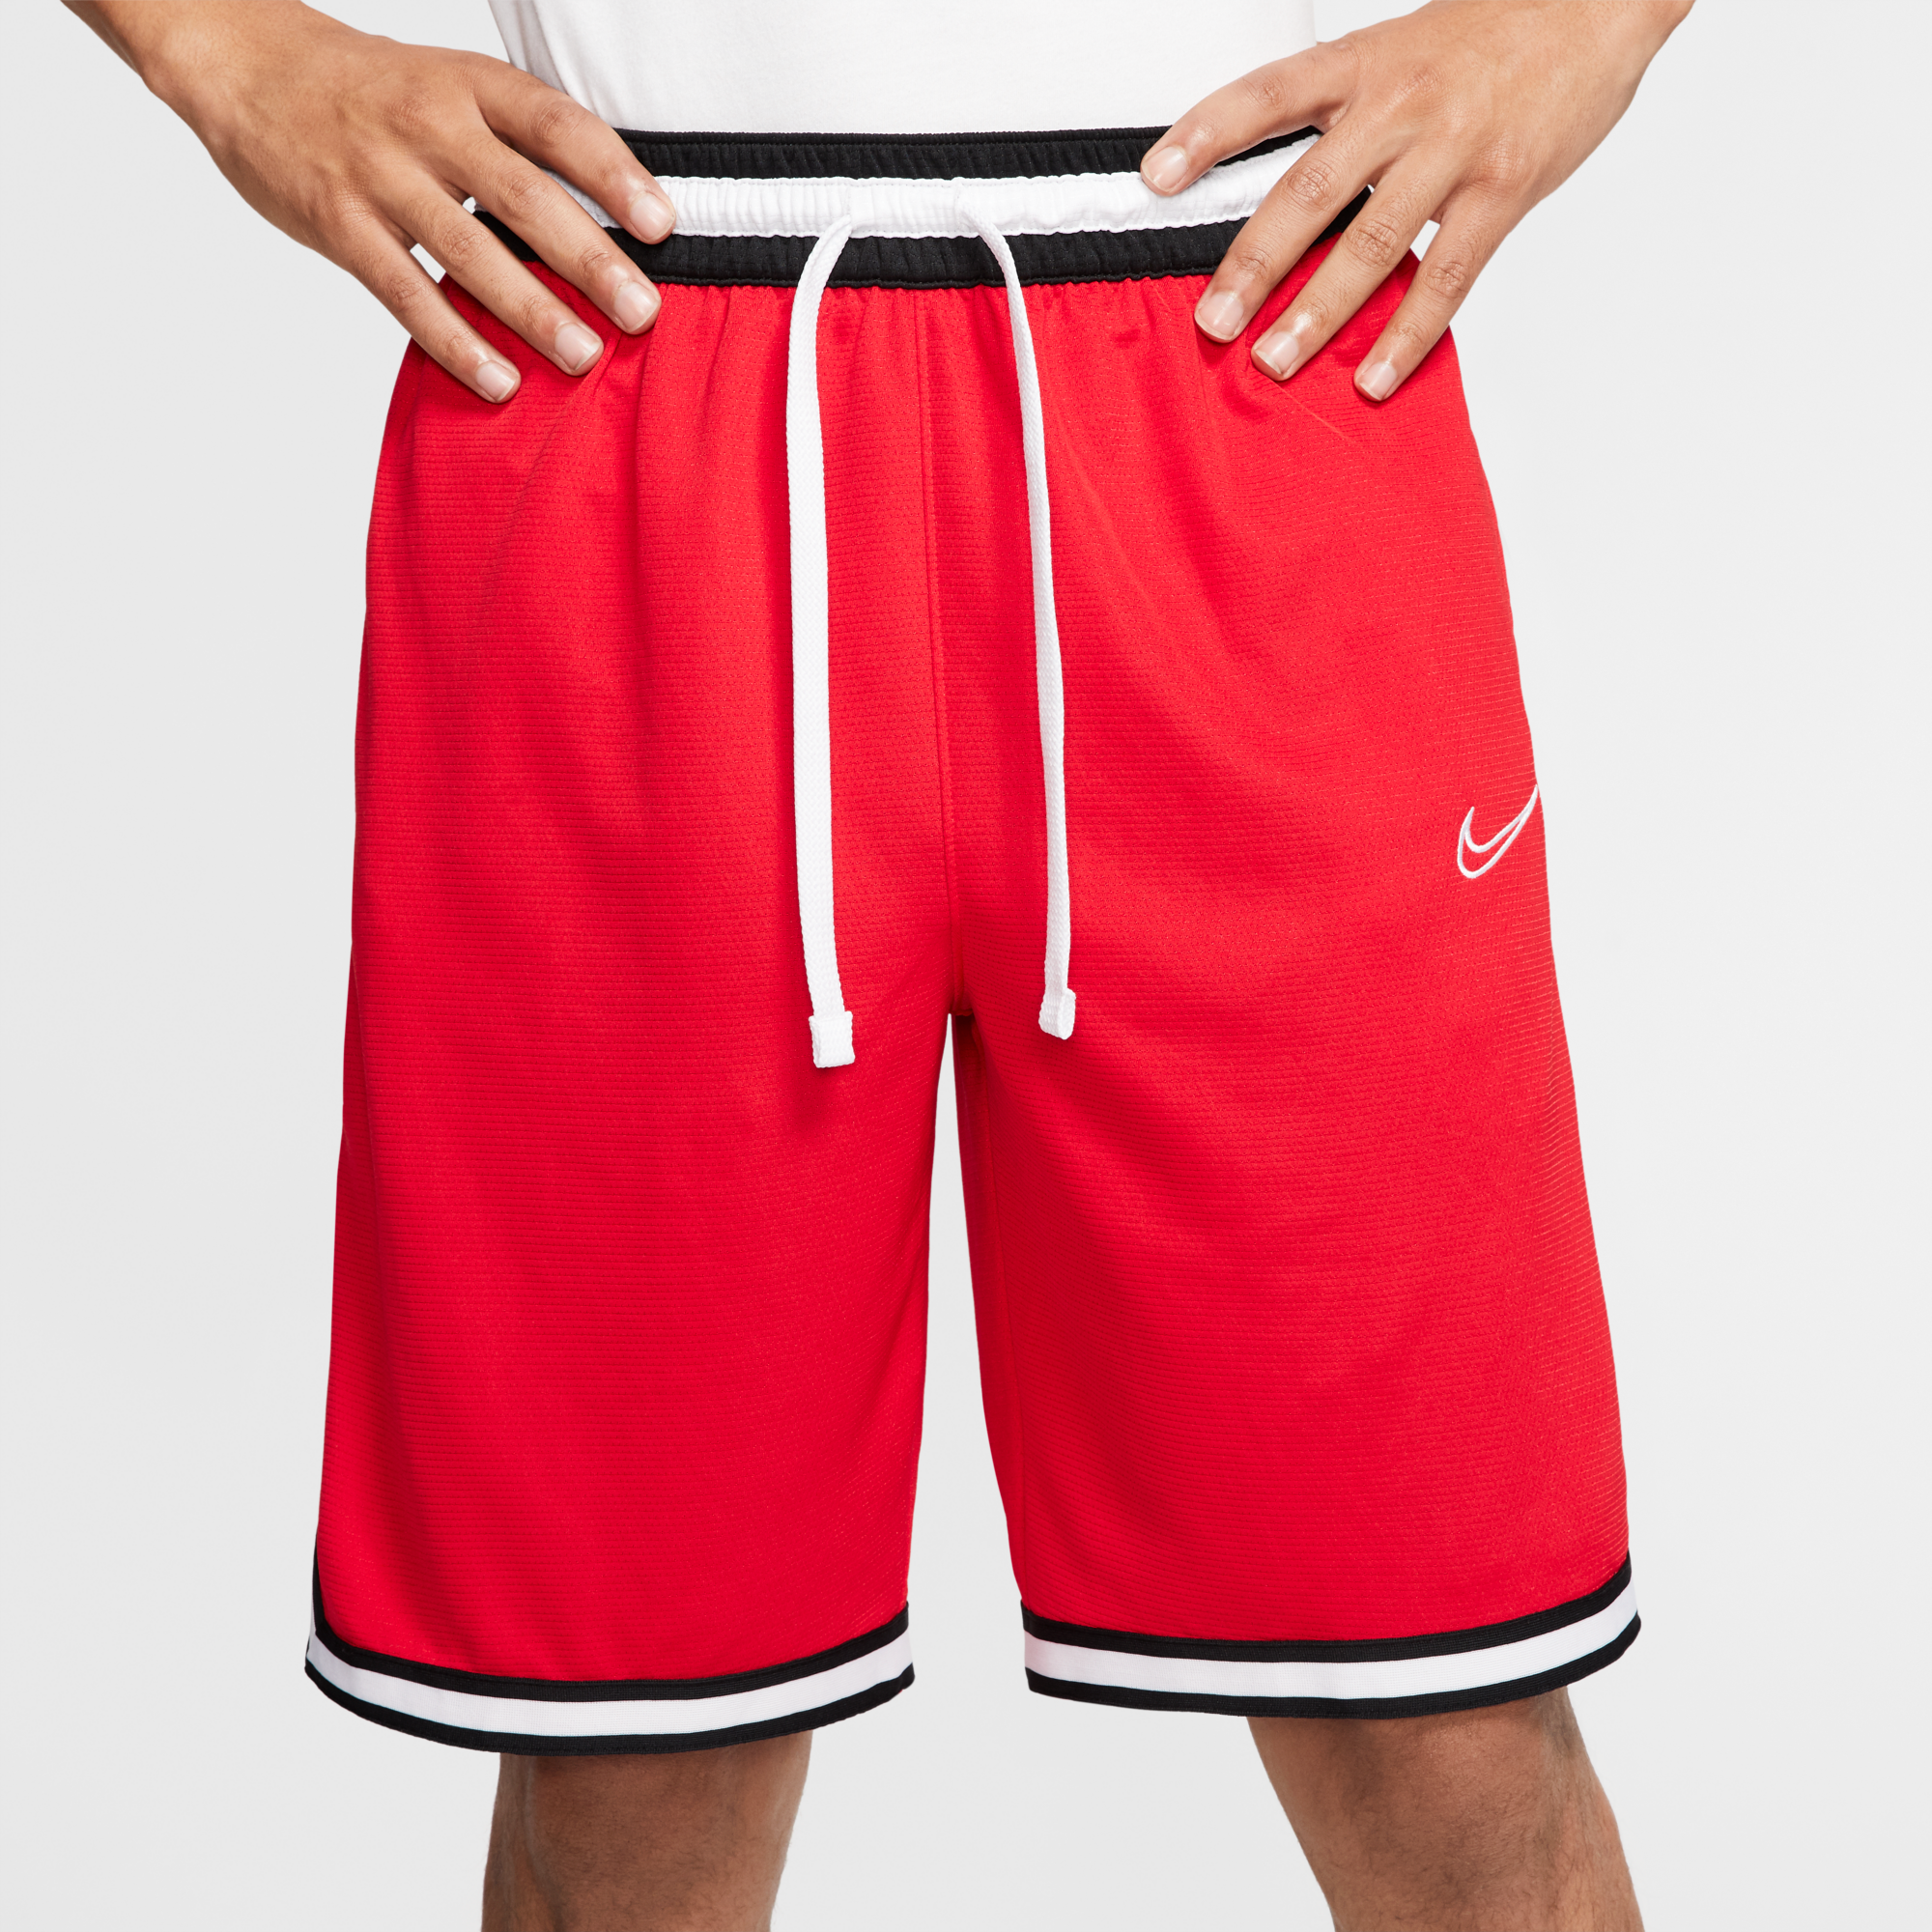 finish line basketball shorts